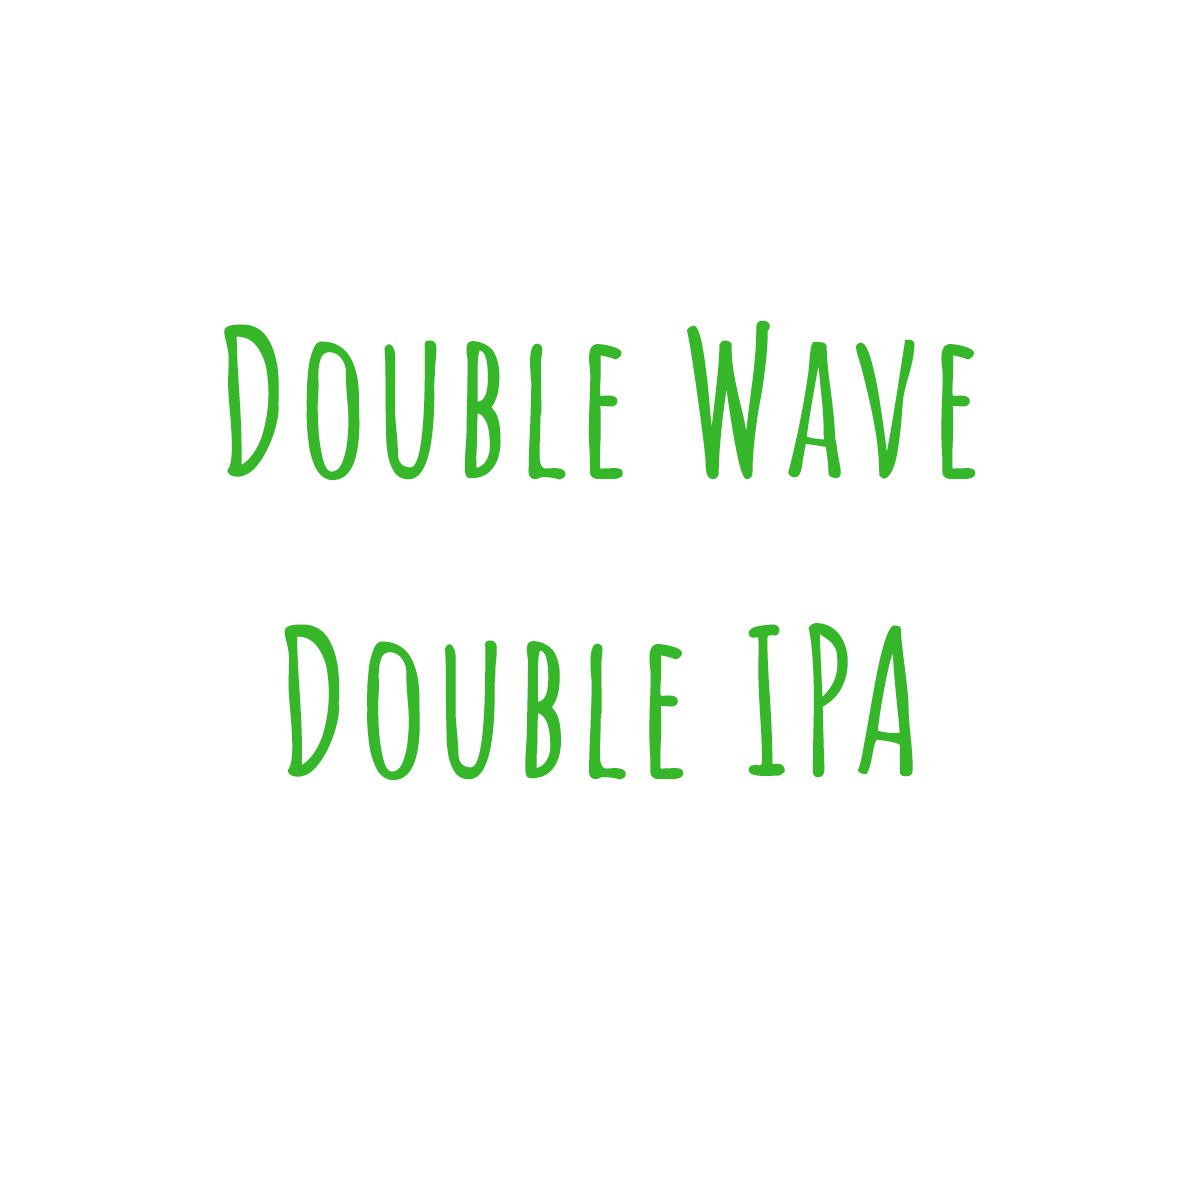 Double Wave Double IPA